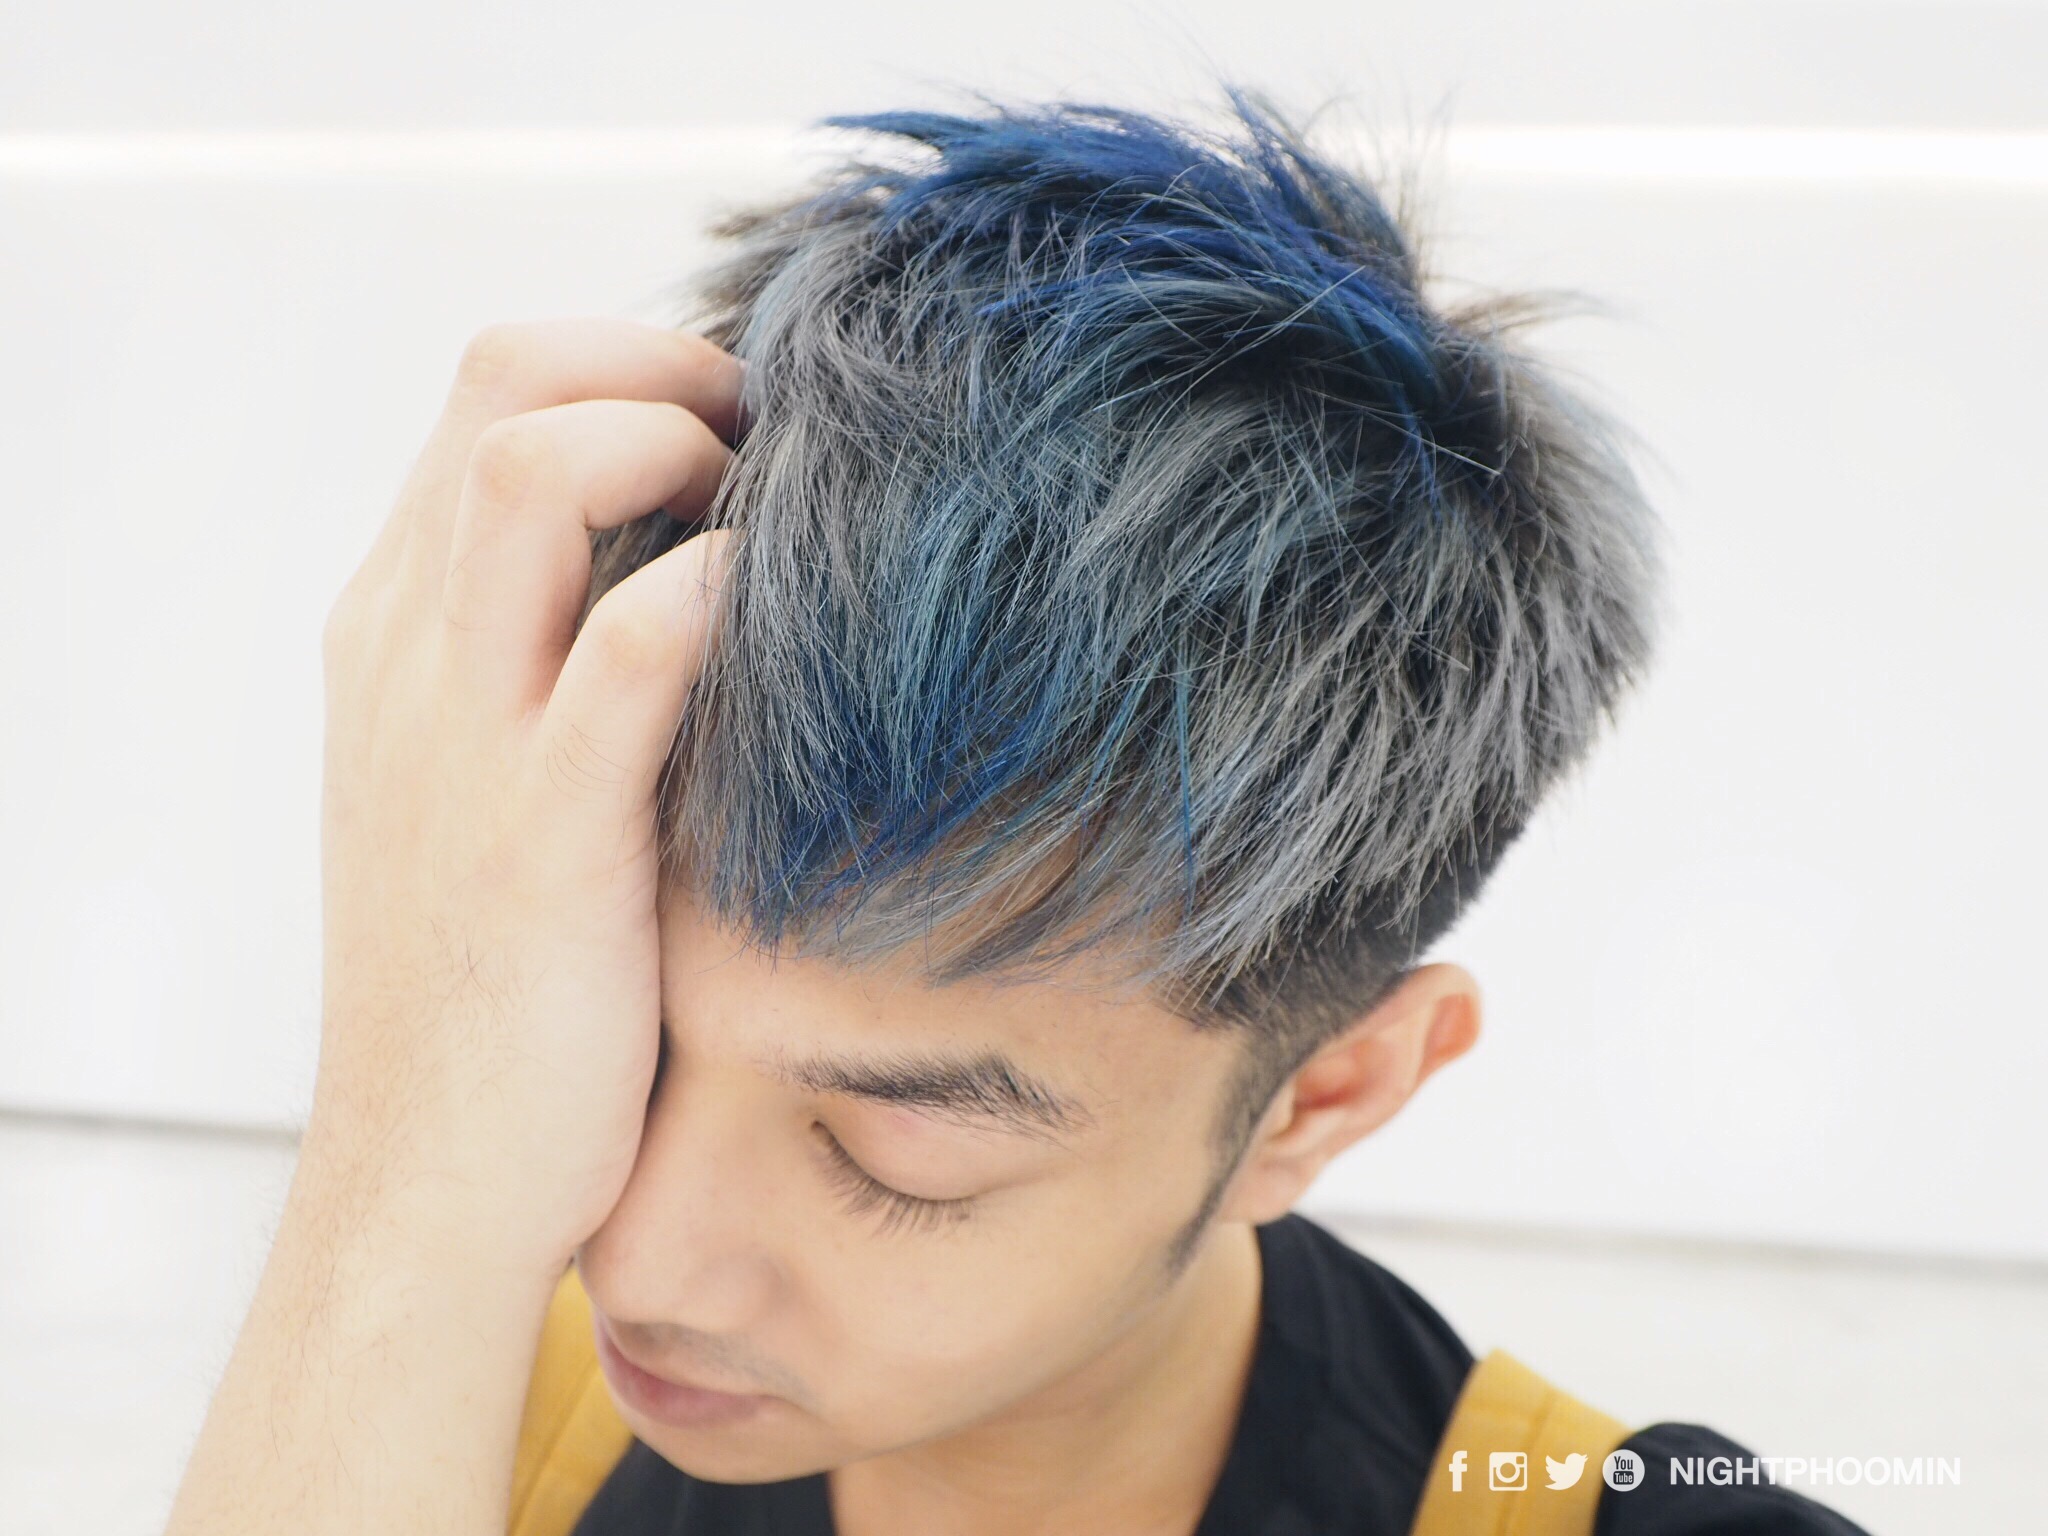 2. Best Silver Blue Hair Dye for Men - wide 2